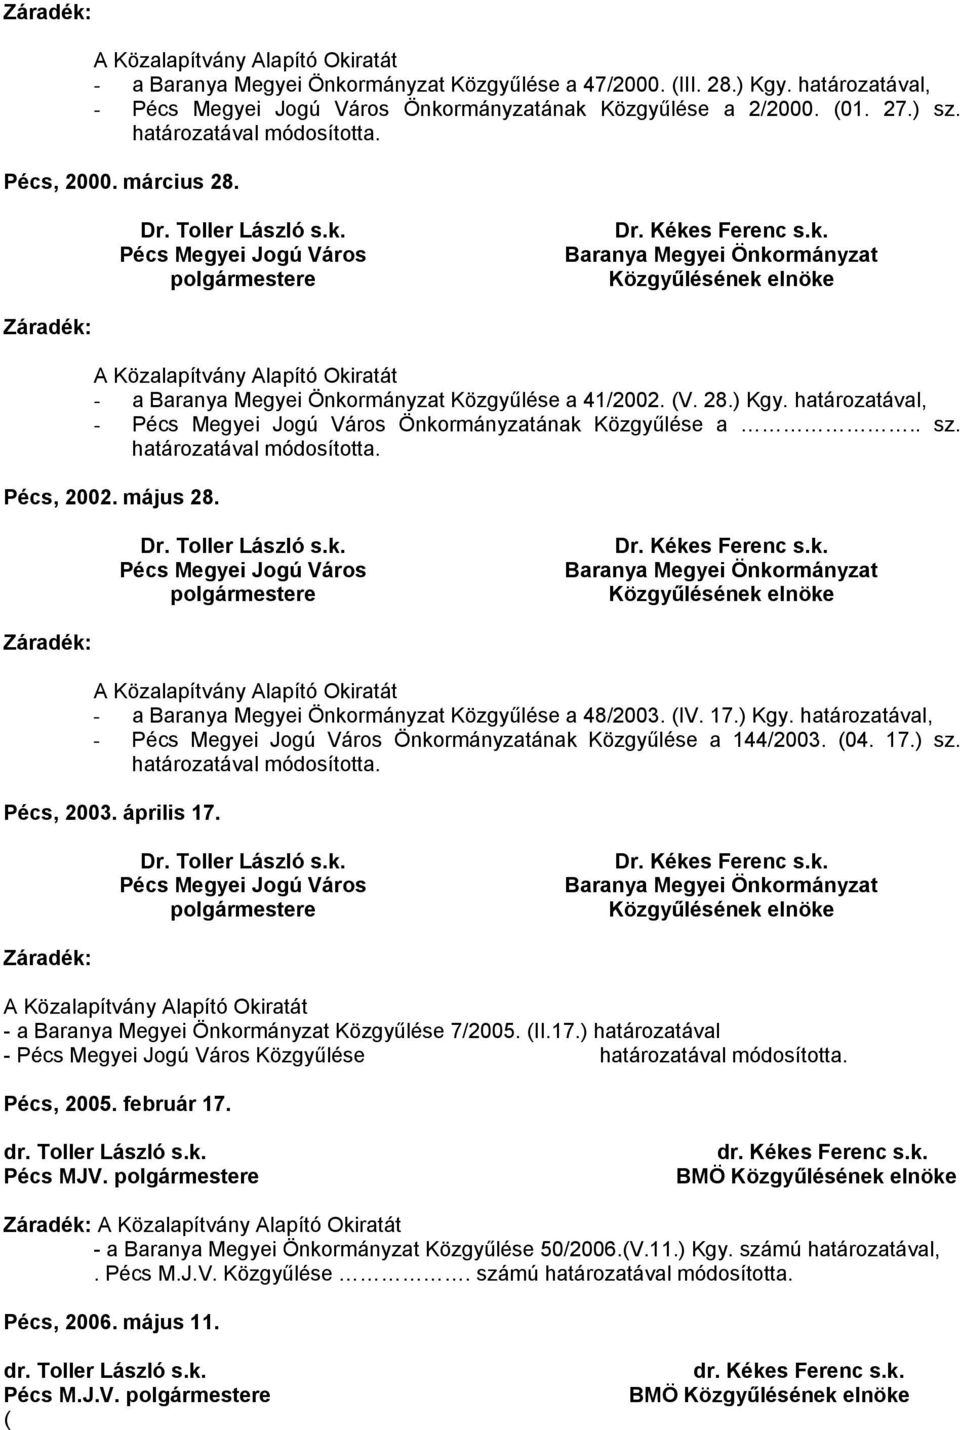 17.) határozatával - Közgyűlése Pécs, 2005. február 17. dr. Toller László s.k. Pécs MJV. dr. Kékes Ferenc s.k. BMÖ - a Közgyűlése 50/2006.(V.11.) Kgy. számú határozatával,.